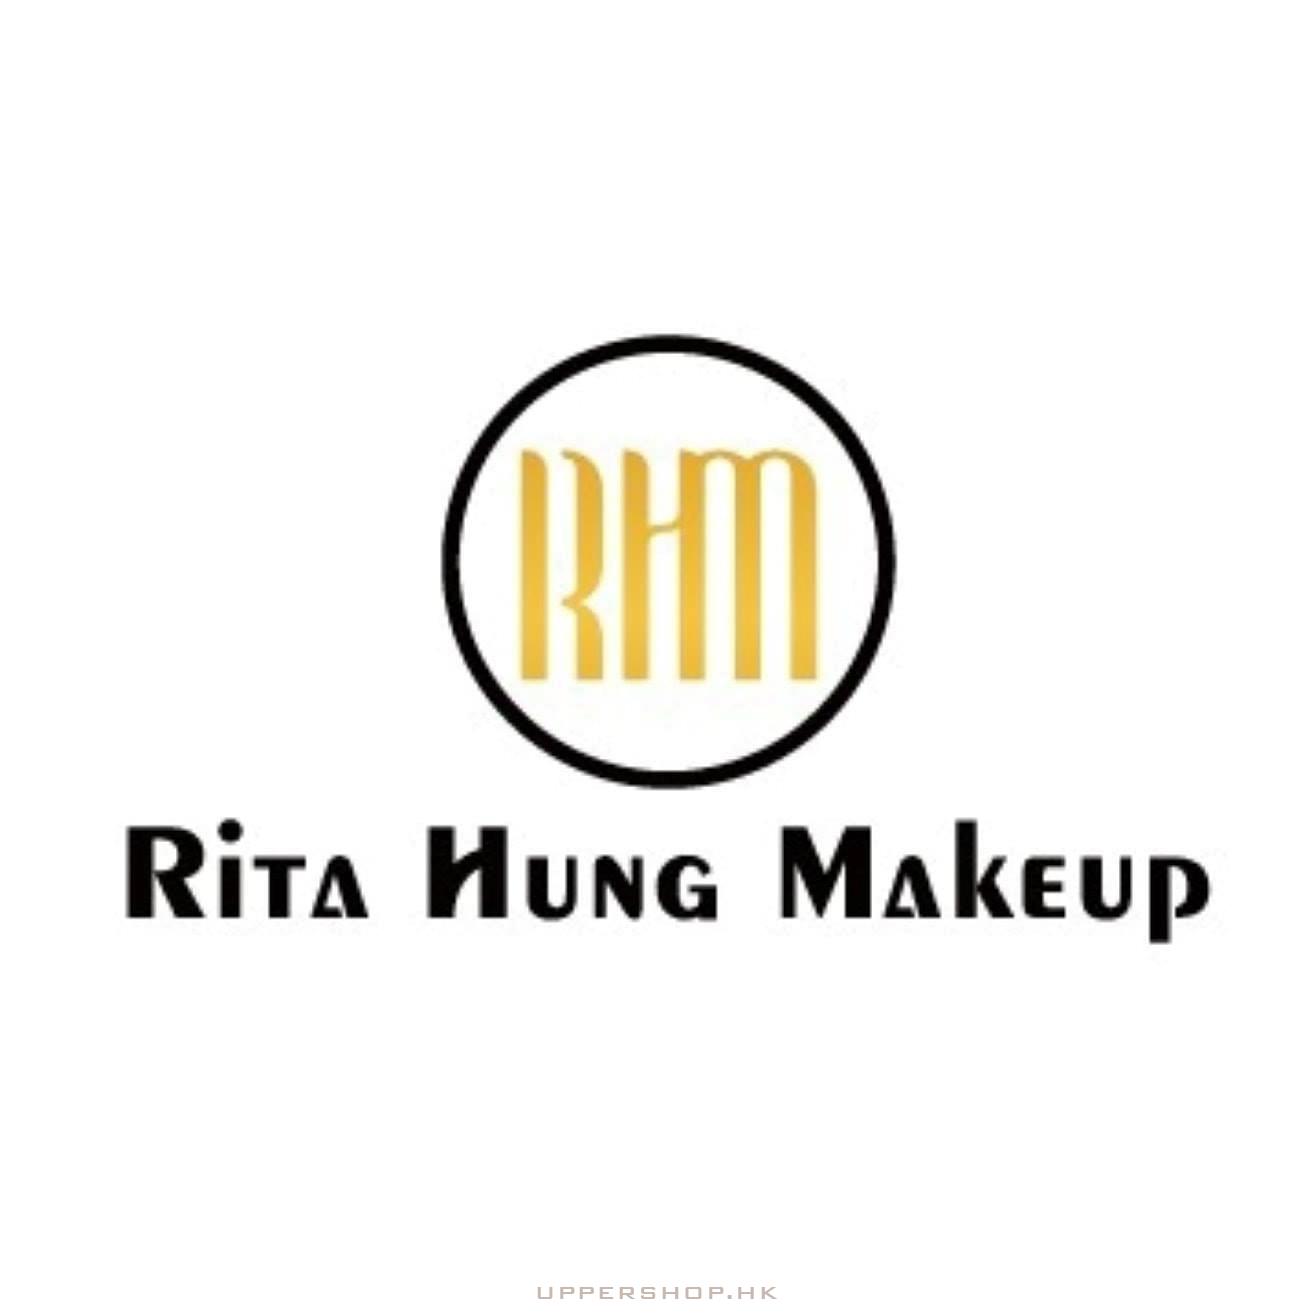 Rita Hung Makeup